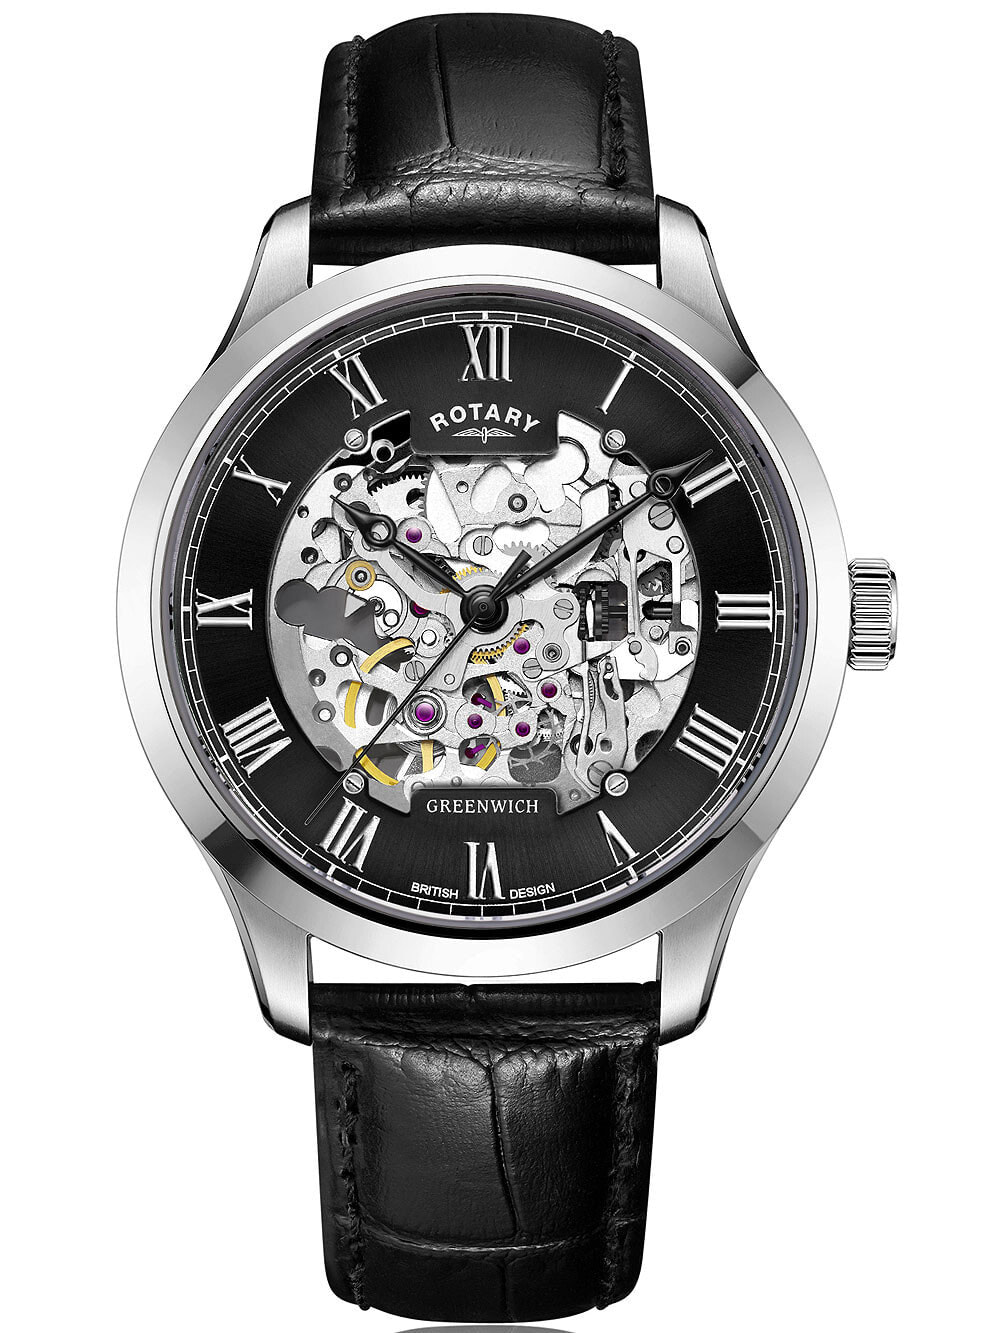 Мужские наручные часы с черным кожаным ремешком Rotary GS02940/30 Greenwich automatic 42mm 5ATM